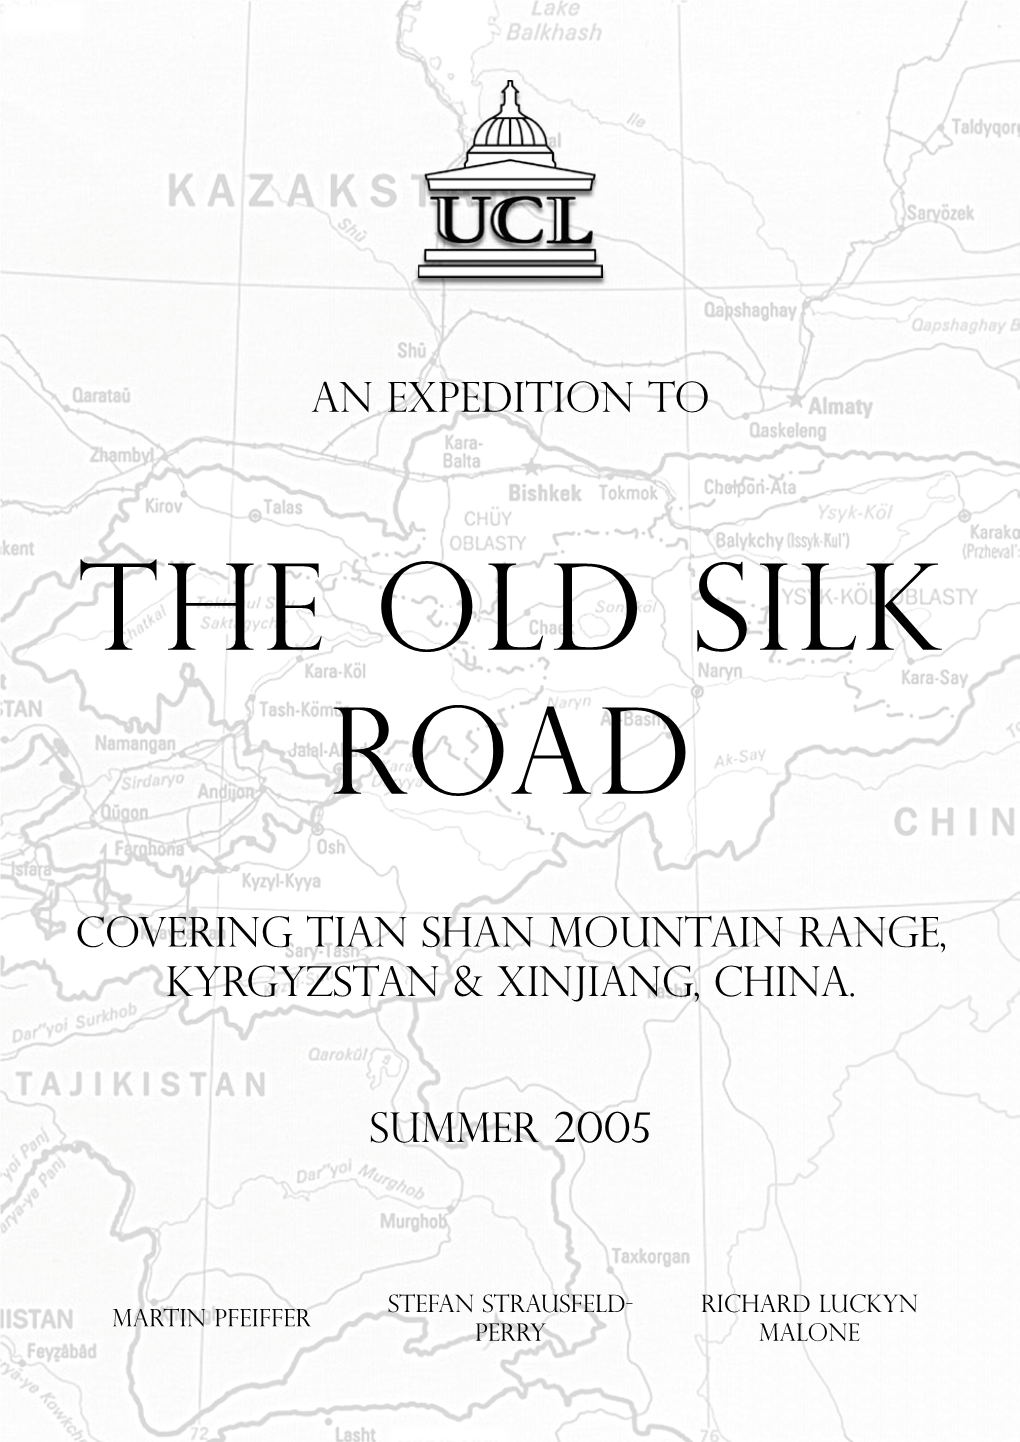 AN Expedition to COVERING TIAN SHAN Mountain RANGE, Kyrgyzstan & XINJIANG, CHINA. Summer 2005